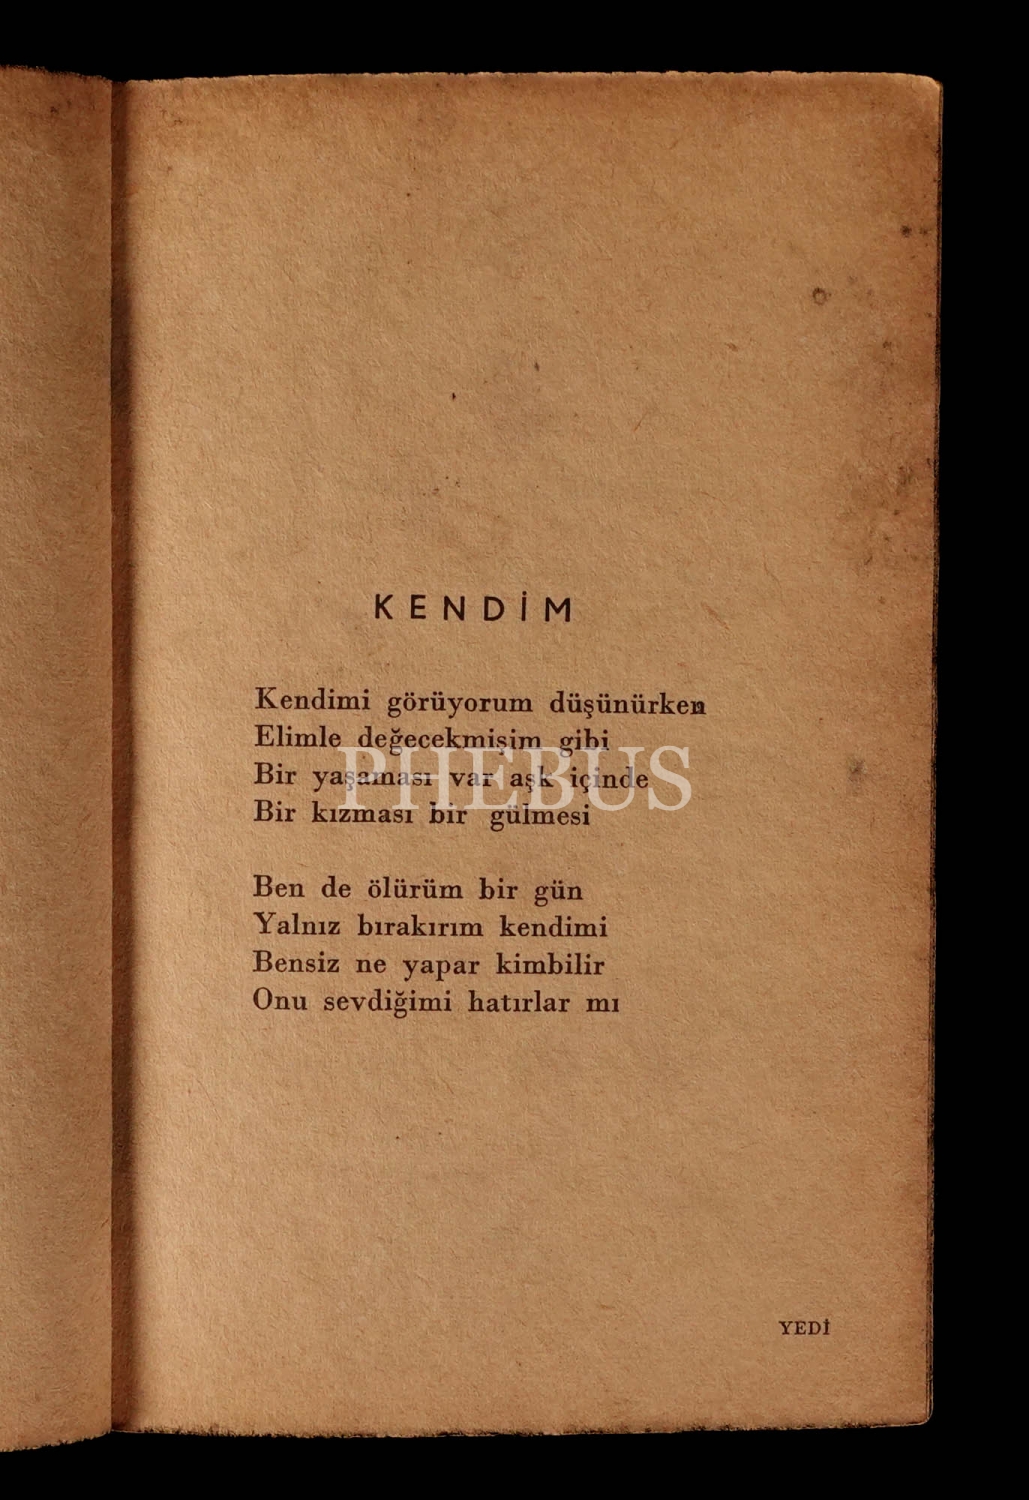 BİRİSİ, Nahit Ulvi Akgün, 1955, Gutenberg Yayınları, 47 sayfa, 12x16 cm...